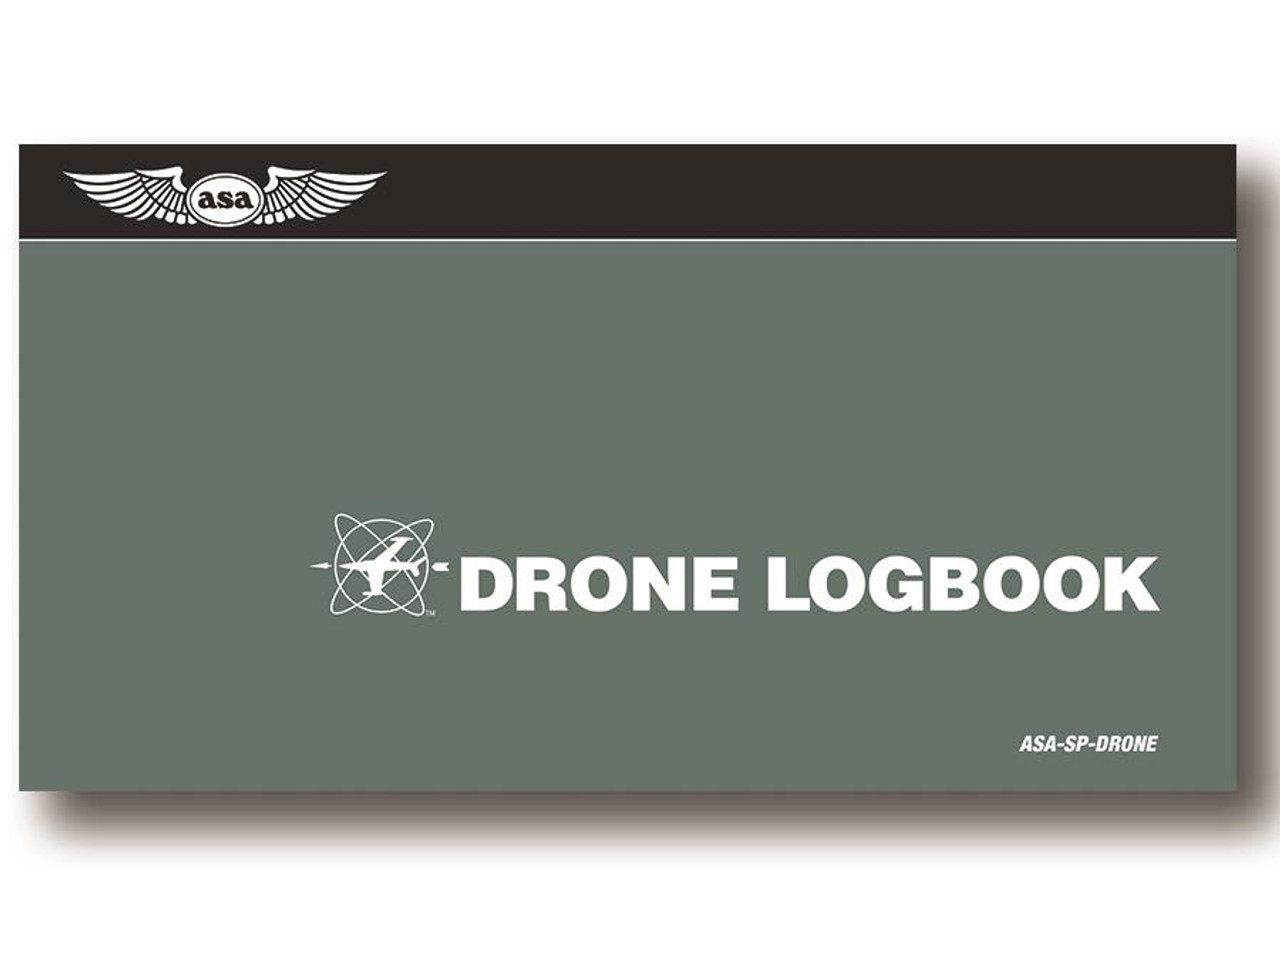 ASA Softcover Drone Logbook 
ASA-SP-DRONE
9781619549982
SkySupplyUSA.com